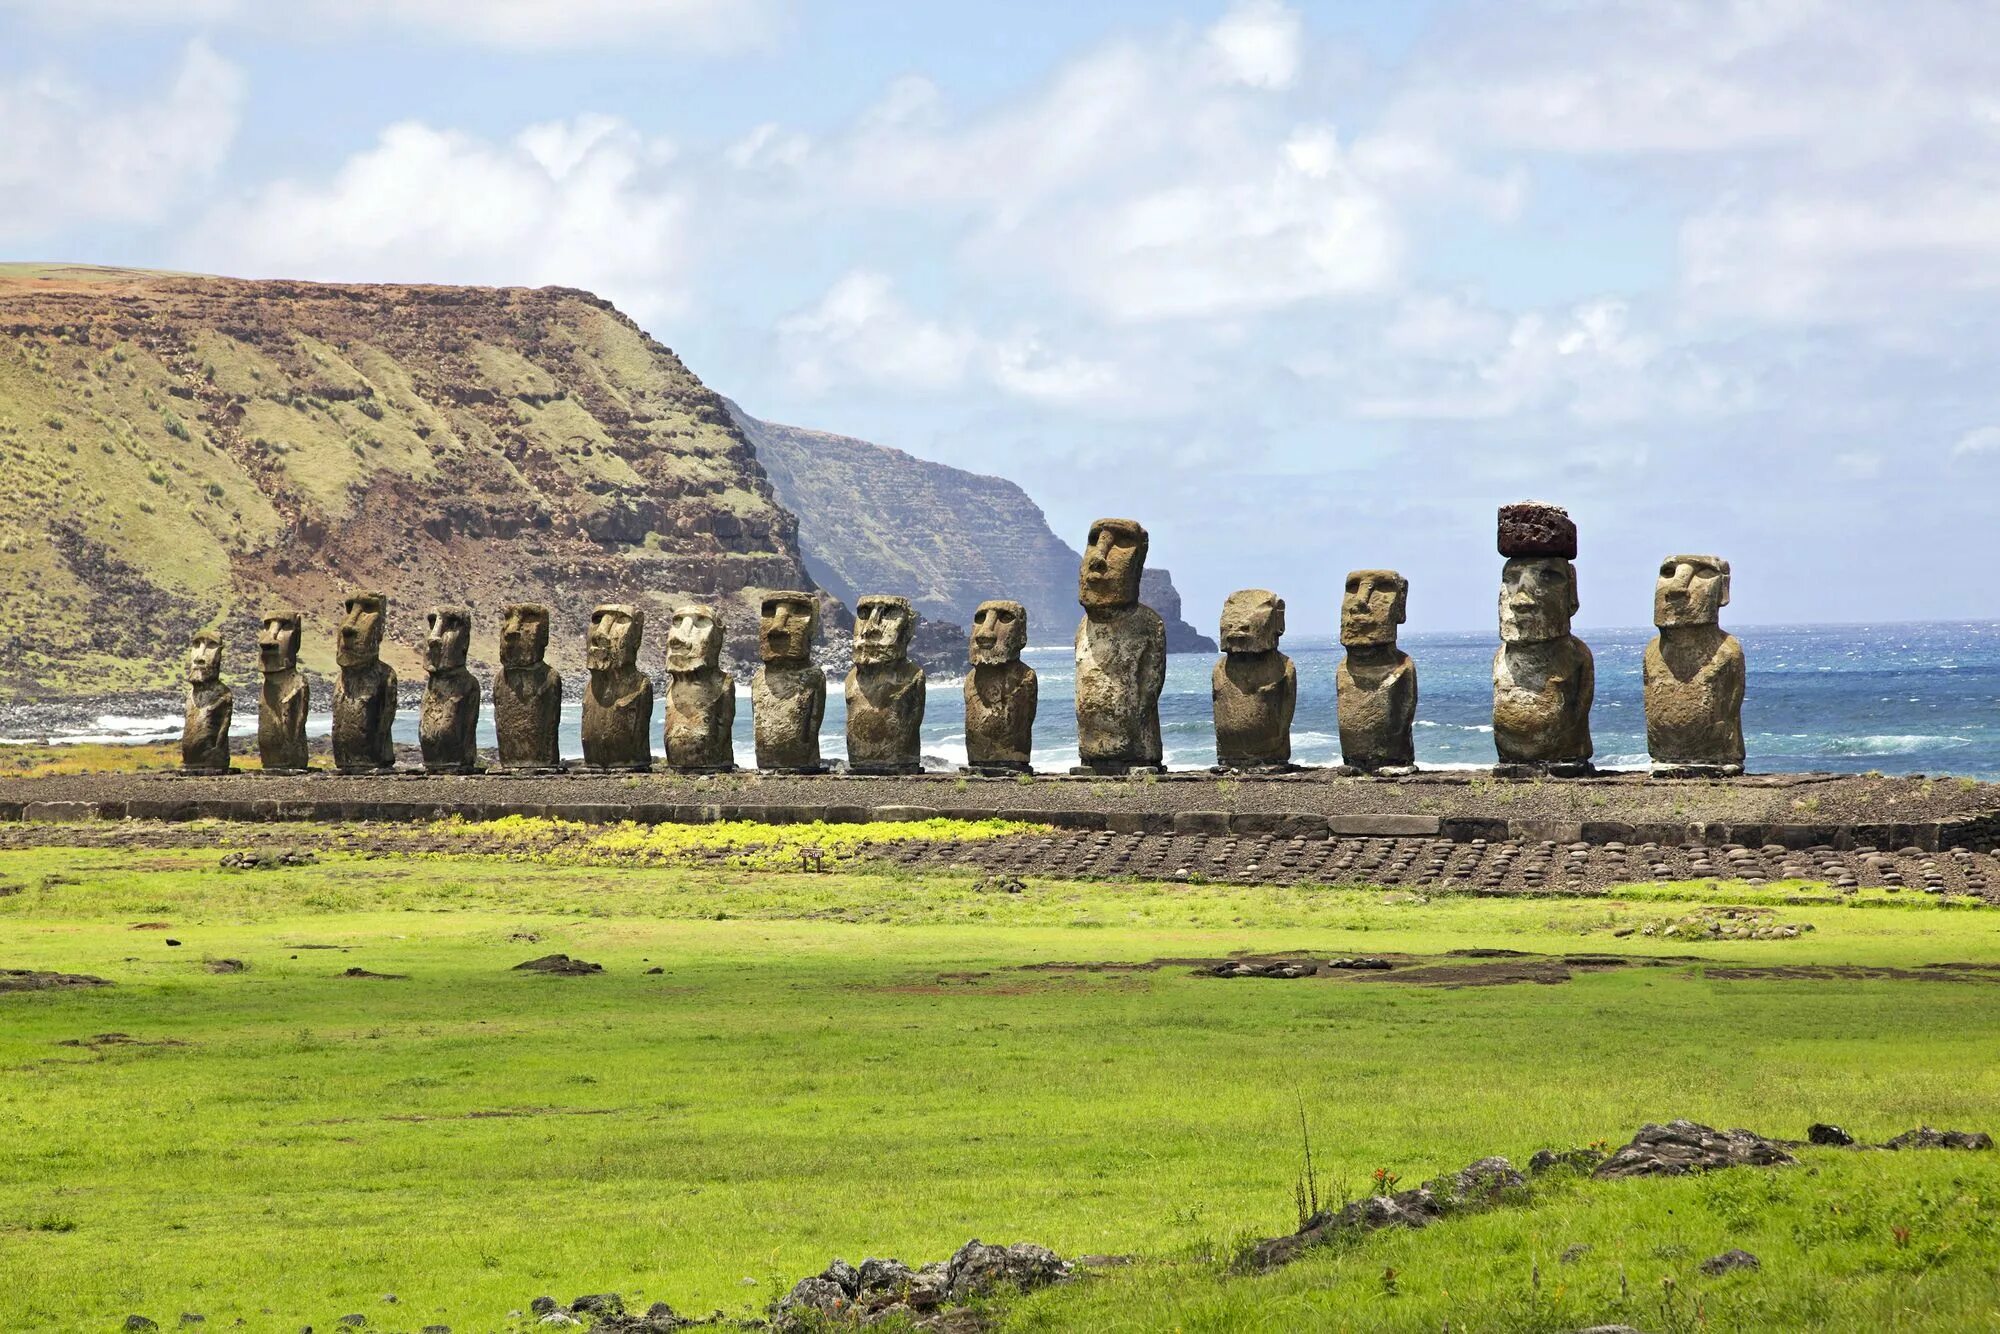 Статуи на острове. Остров Пасхи статуи Моаи. Каменные статуи Моаи остров Пасхи Чили. Моаи на острове Пасхи. Истуканы Рапа-Нуи остров Пасхи.